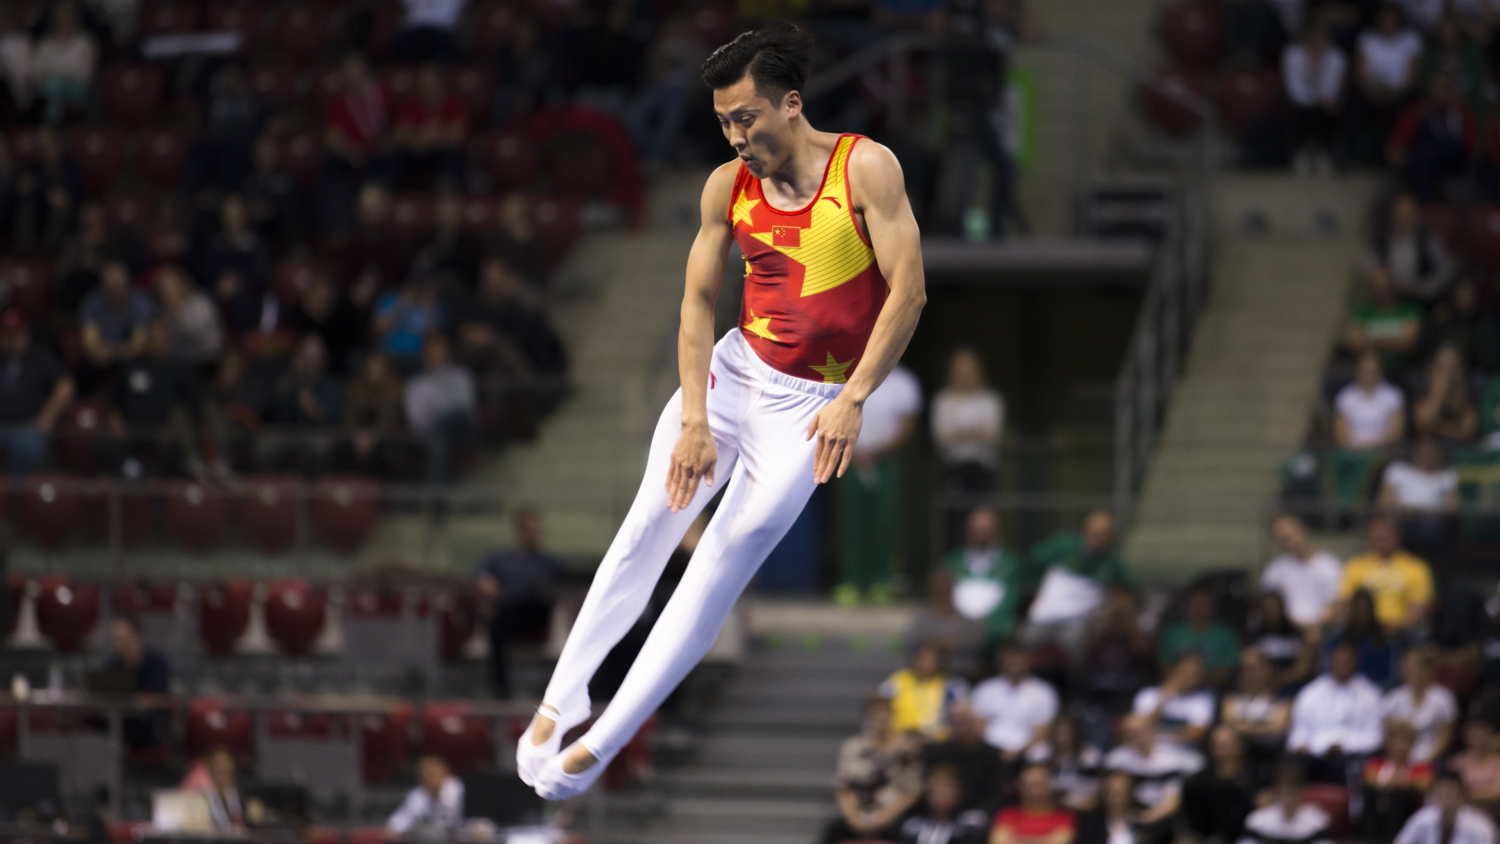 Photographie couleur du chinois Dong Dong, champion olympique de Trampoline, en train d'effectuer un salto en position tendu